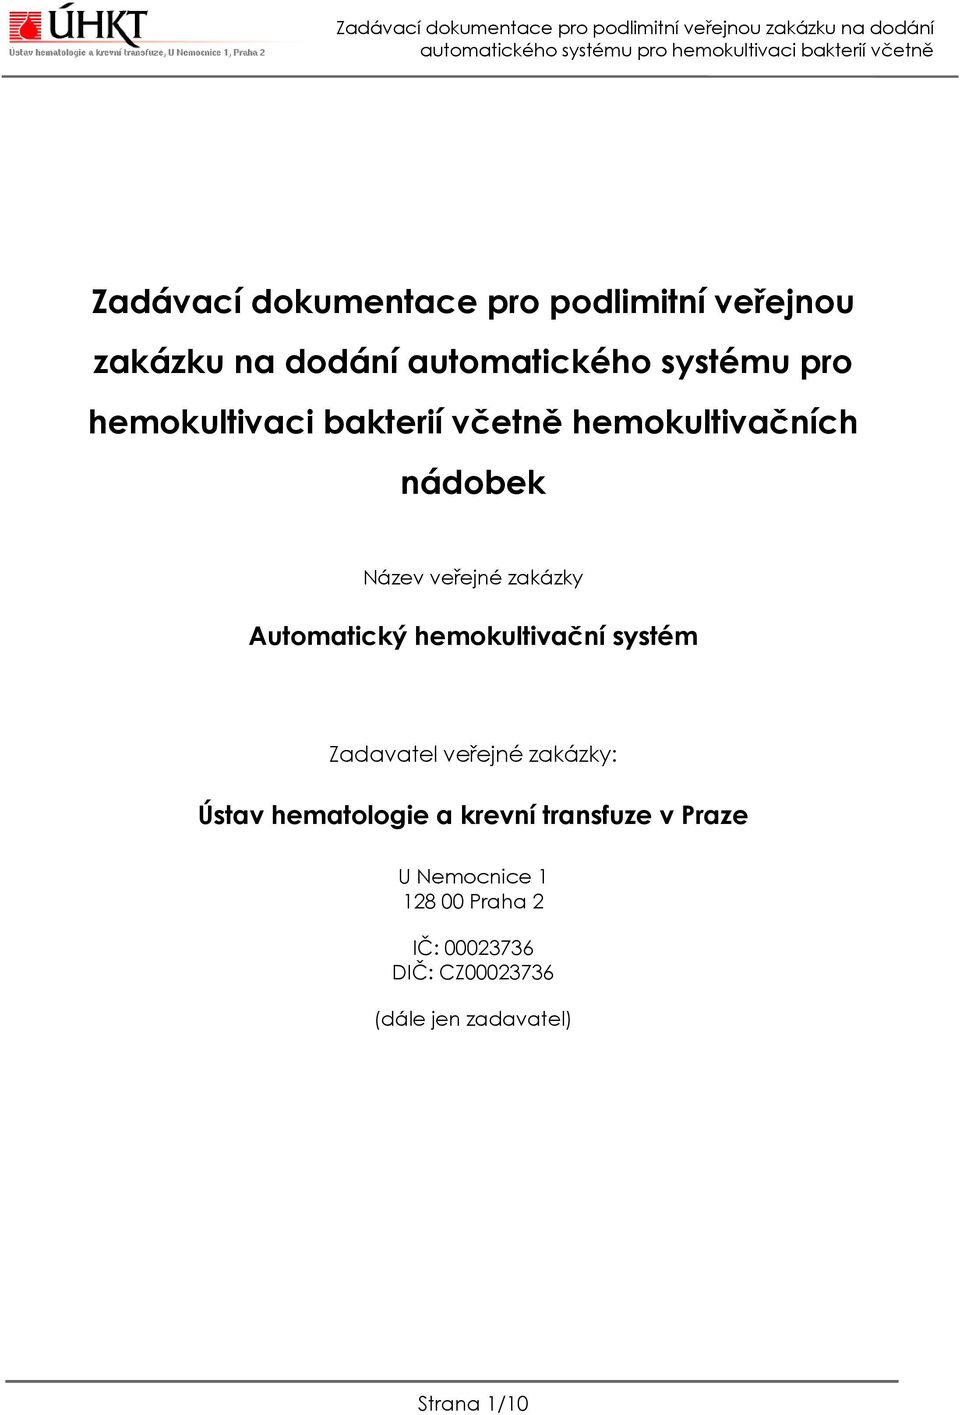 hemokultivační systém Zadavatel veřejné zakázky: Ústav hematologie a krevní transfuze v